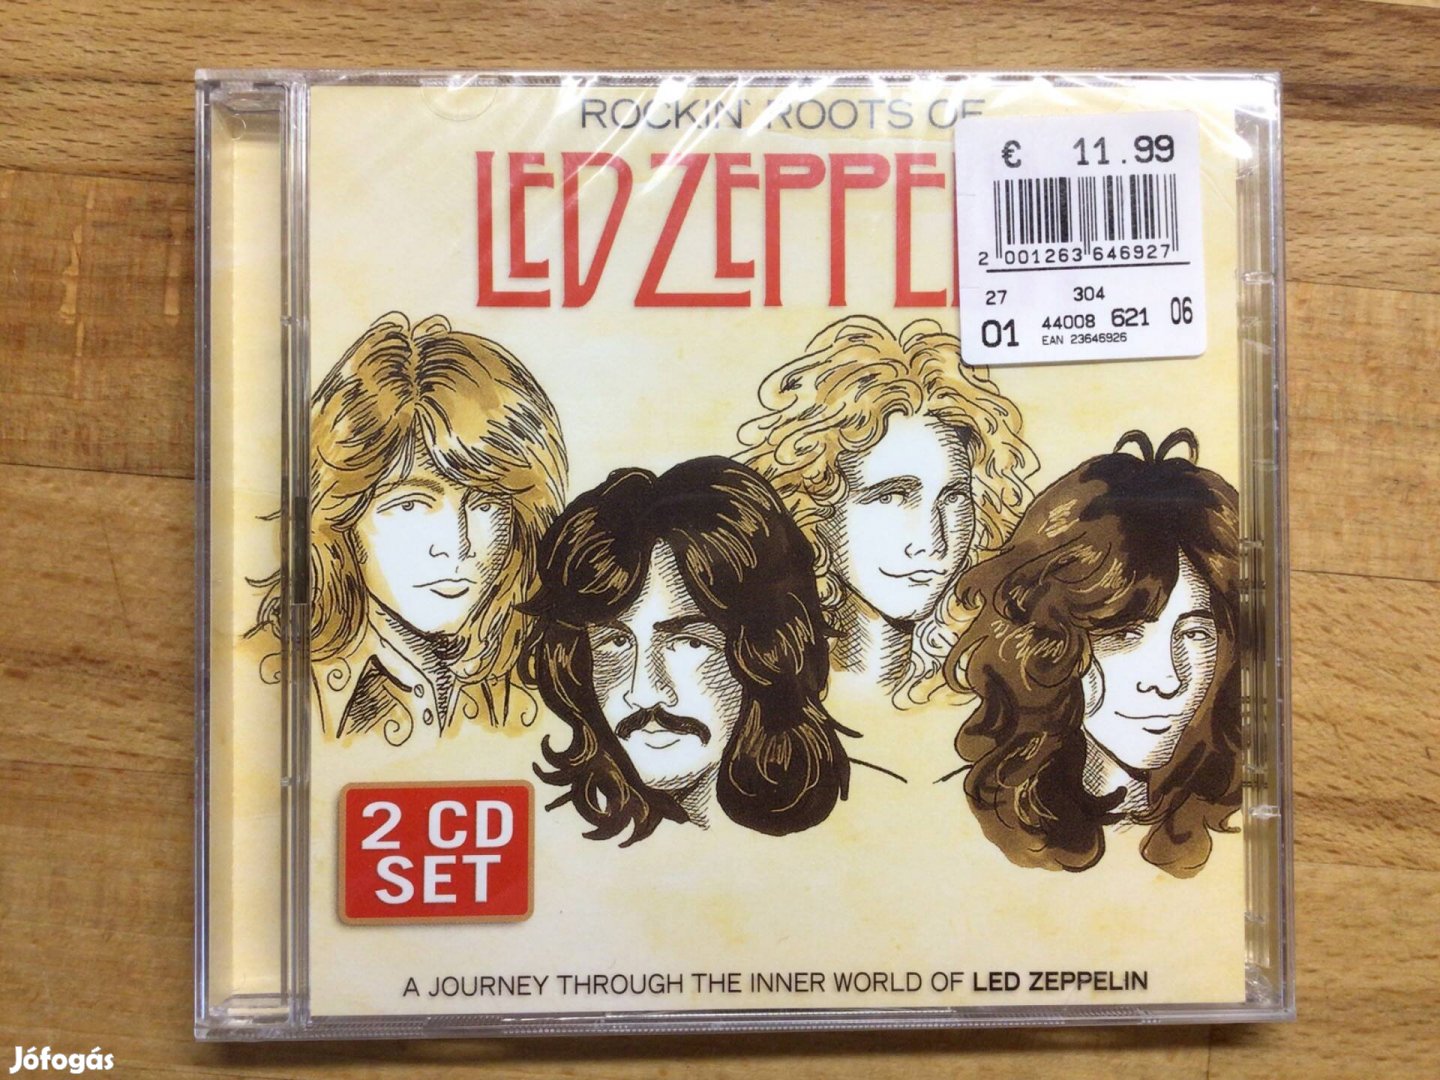 Led Zeppelin - Rockin Roots Of, új, bontatlan cd lemez dupla